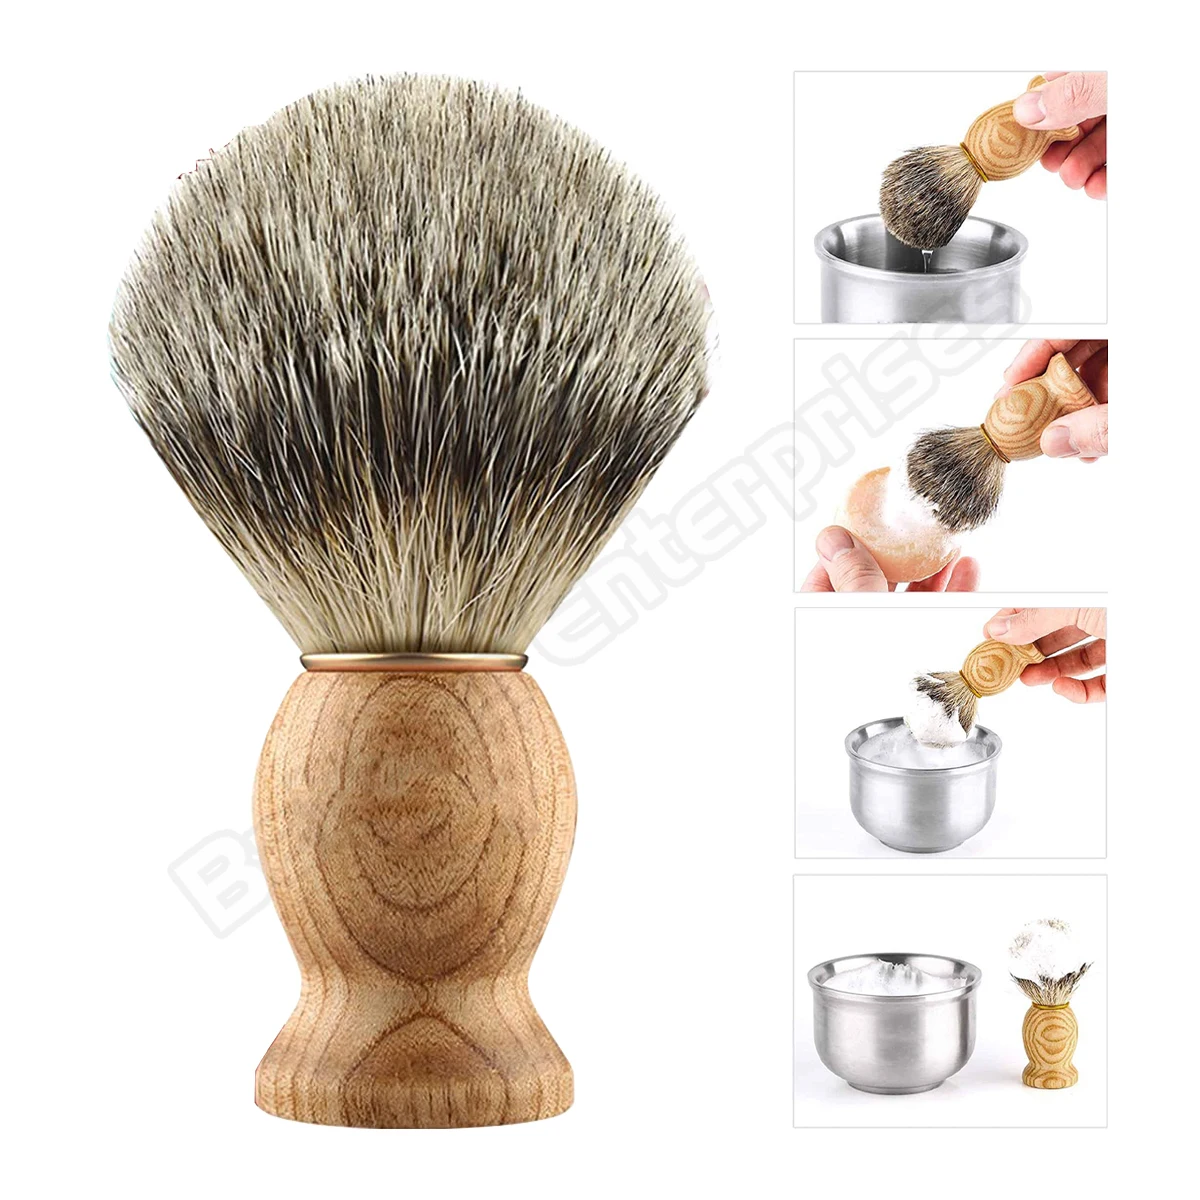 Shaving Brush Set Wholesale Straight Edge Barber Razor Shave Set Badger Brush & Bowl Mug for Men Beard Remover